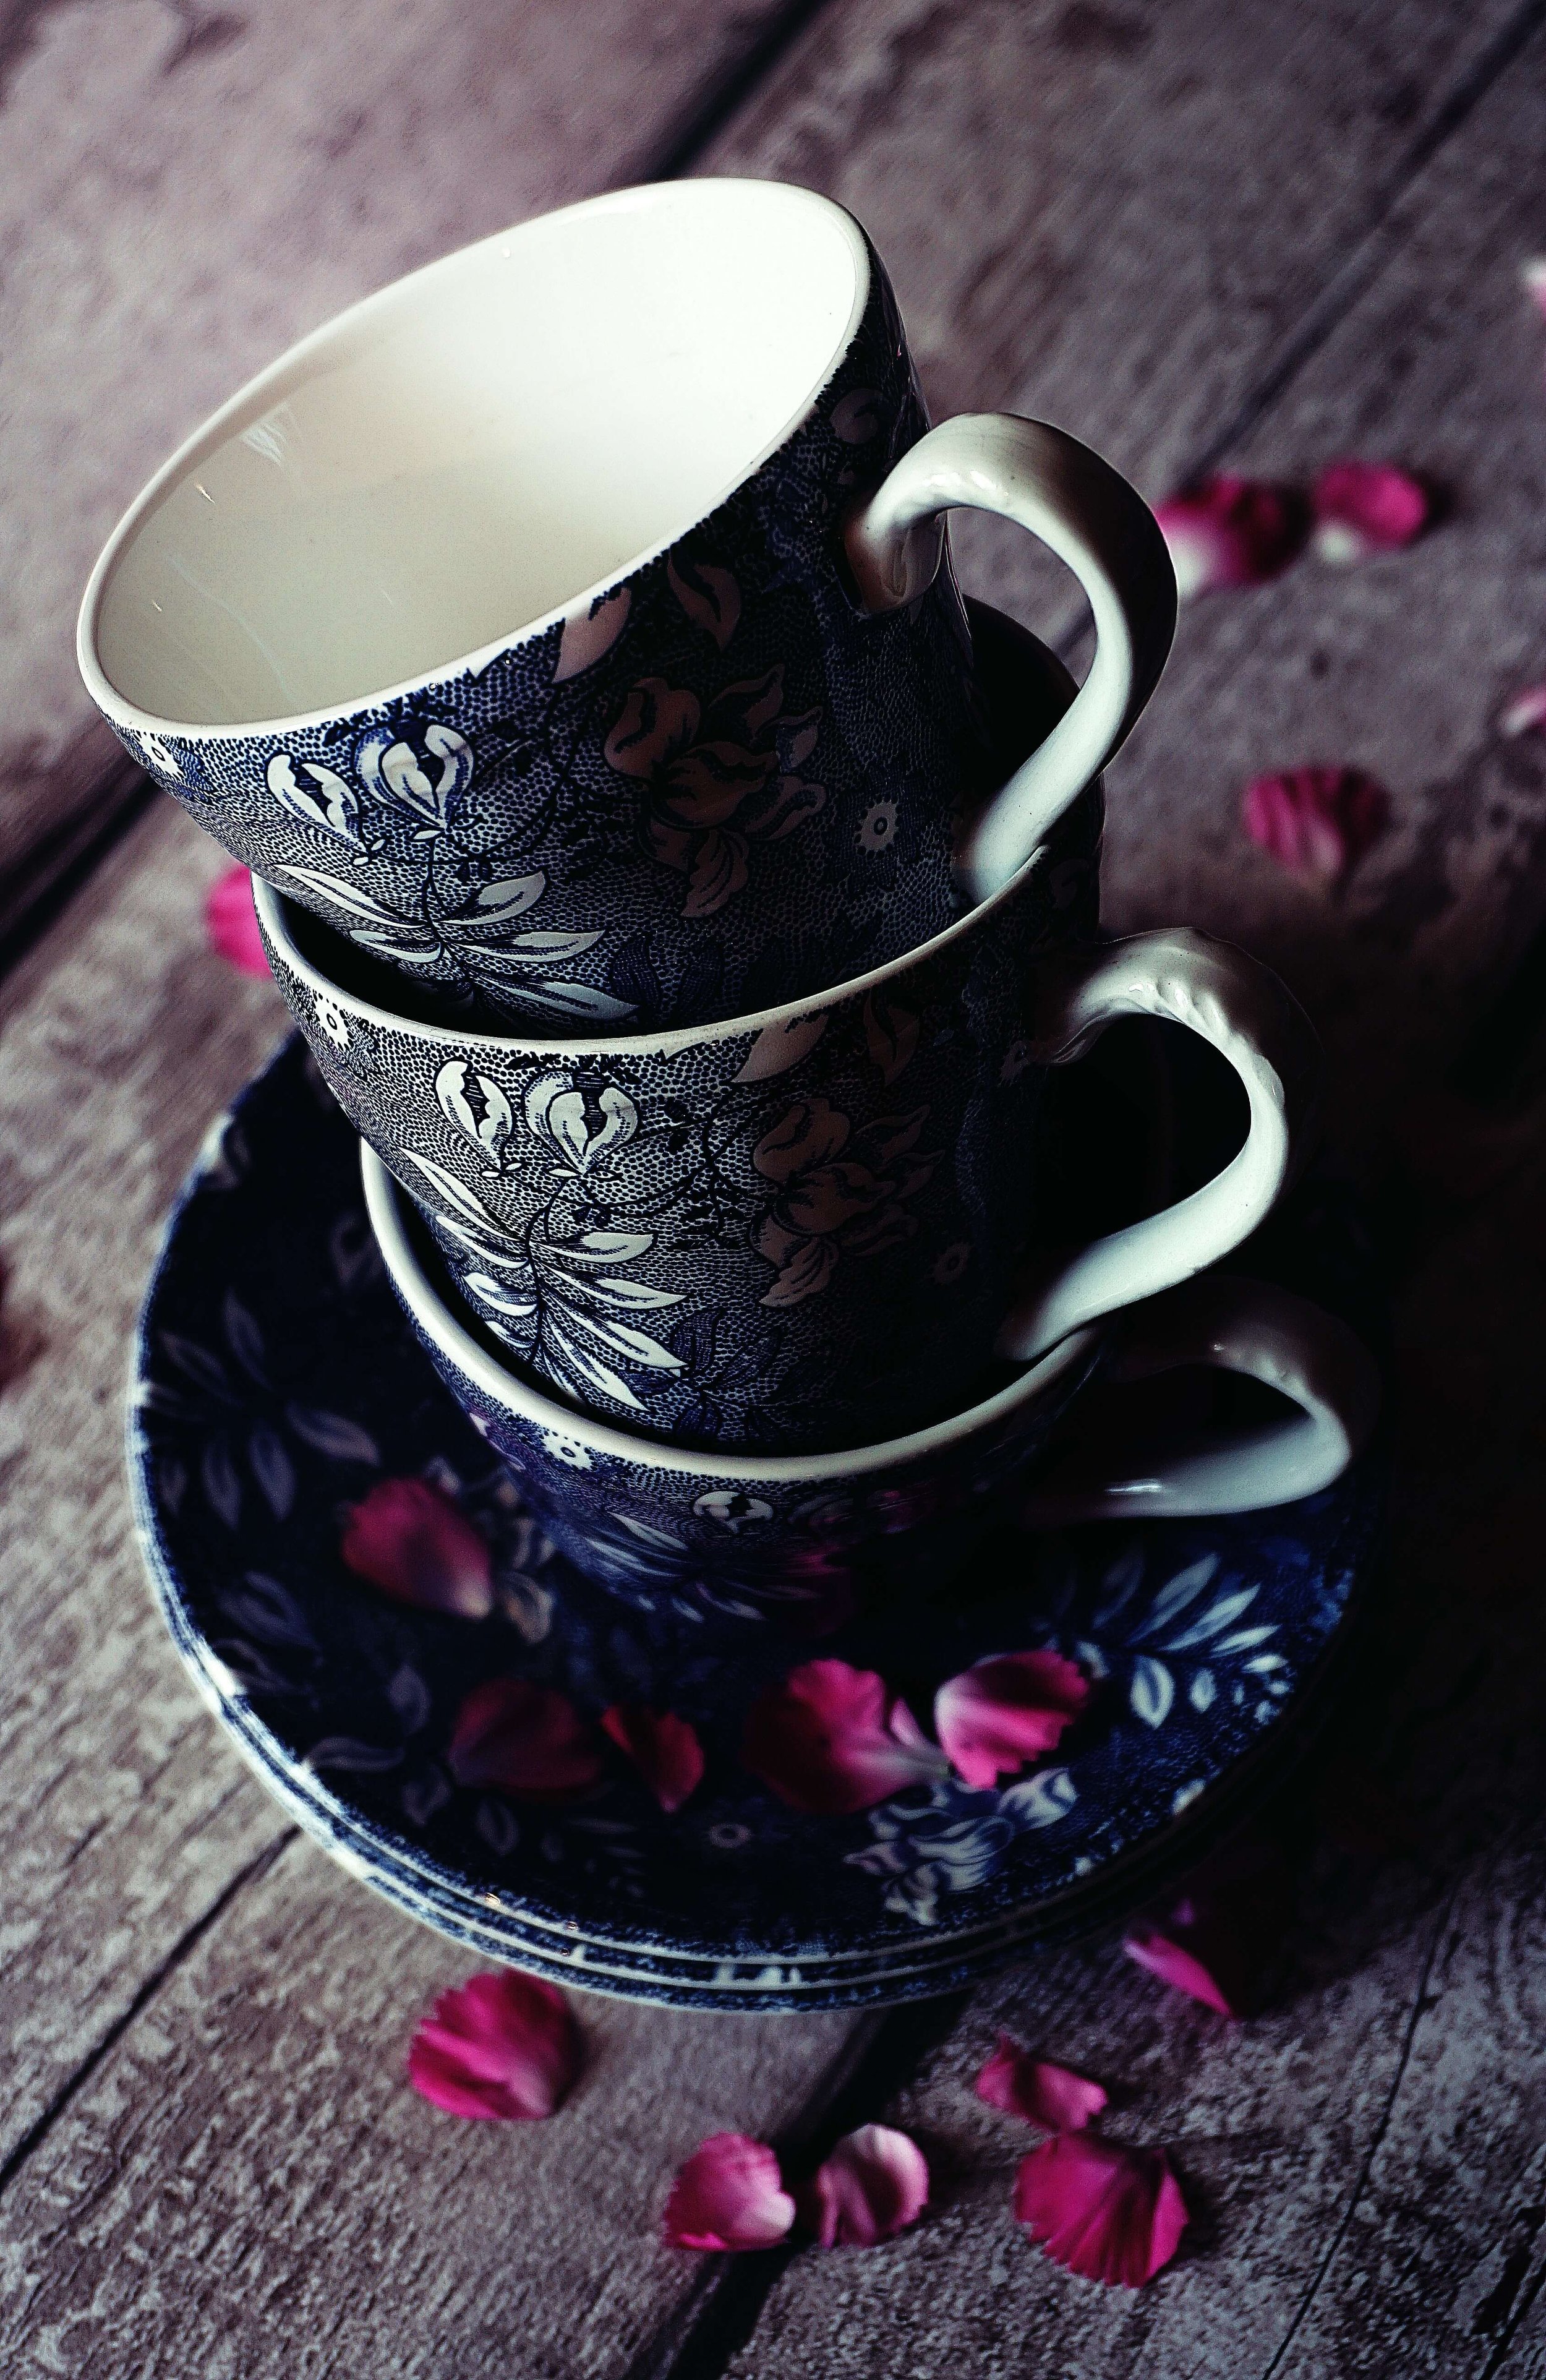 vintage style teacups.jpg